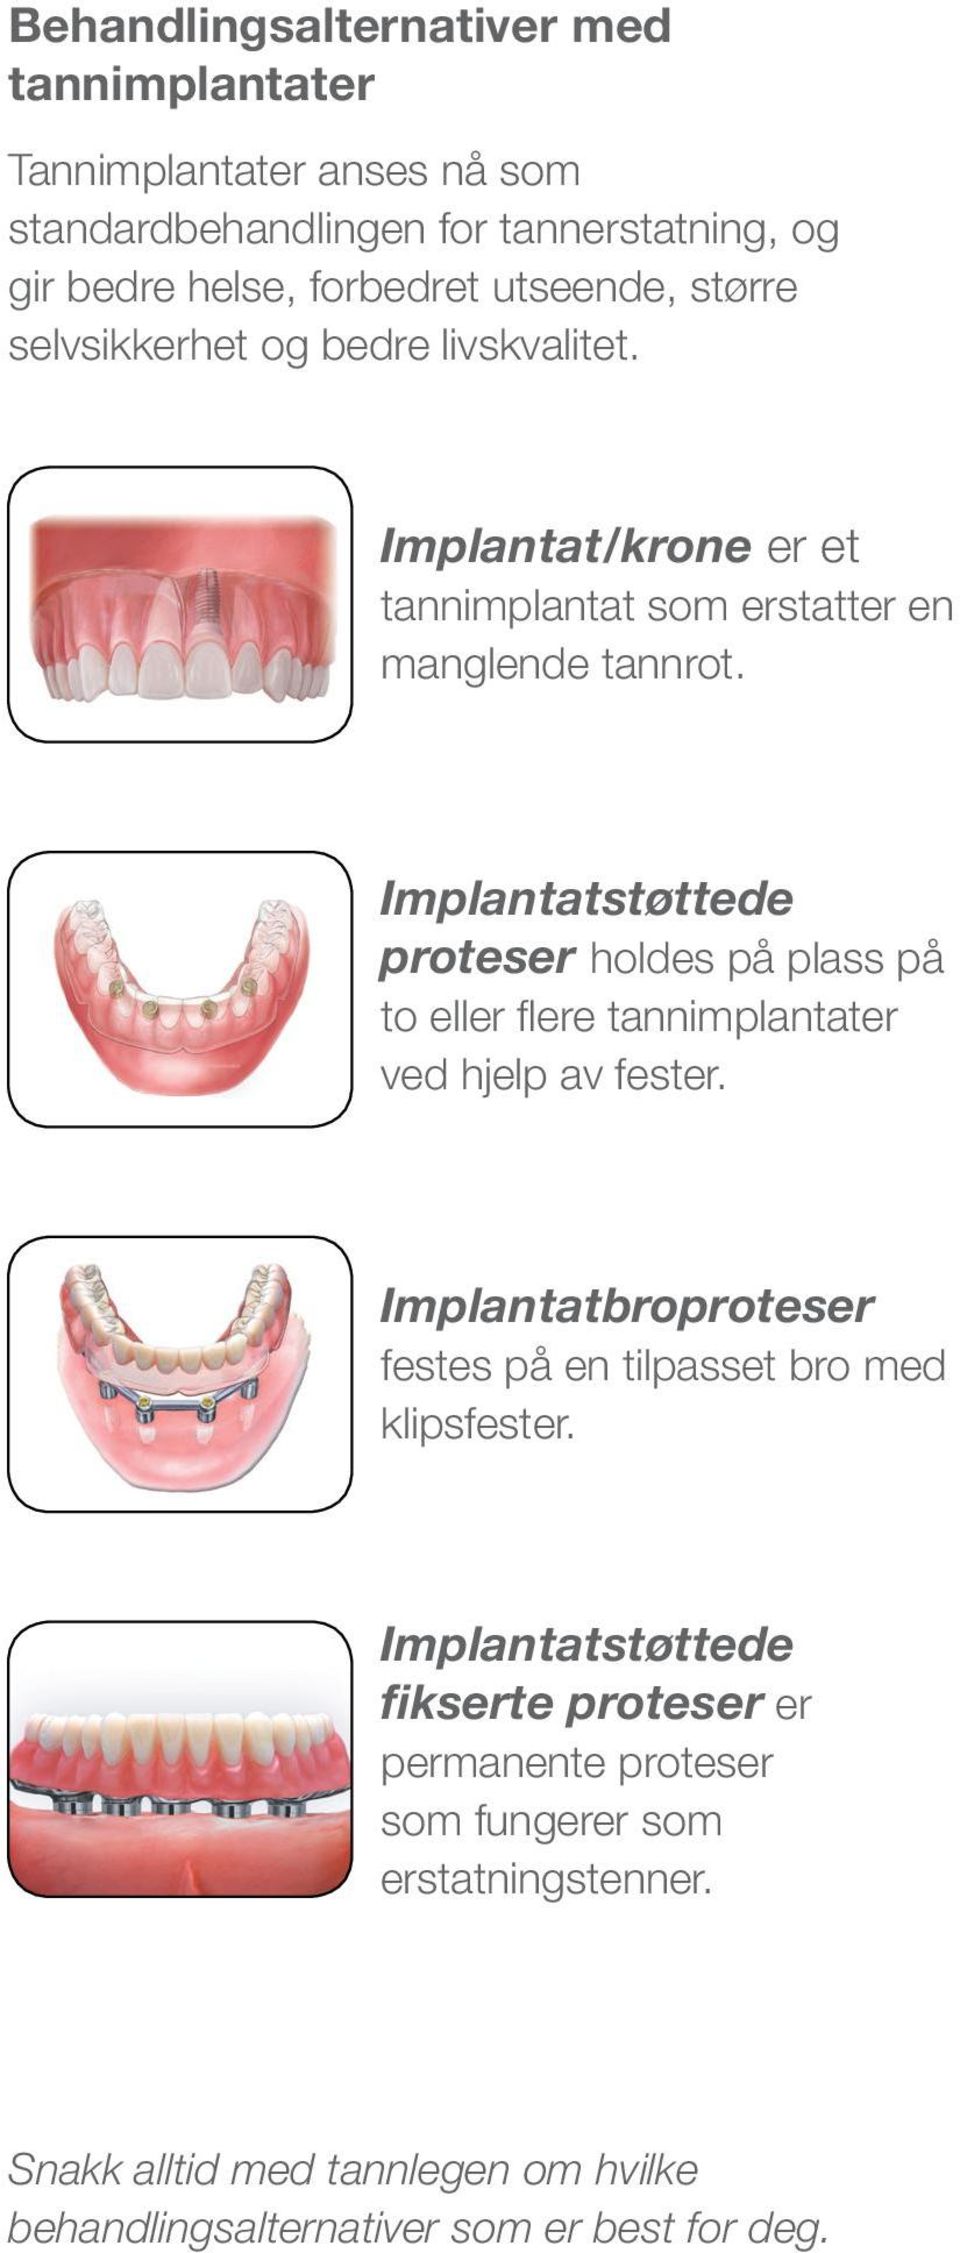 Implantatstøttede proteser holdes på plass på to eller flere tannimplantater ved hjelp av fester.